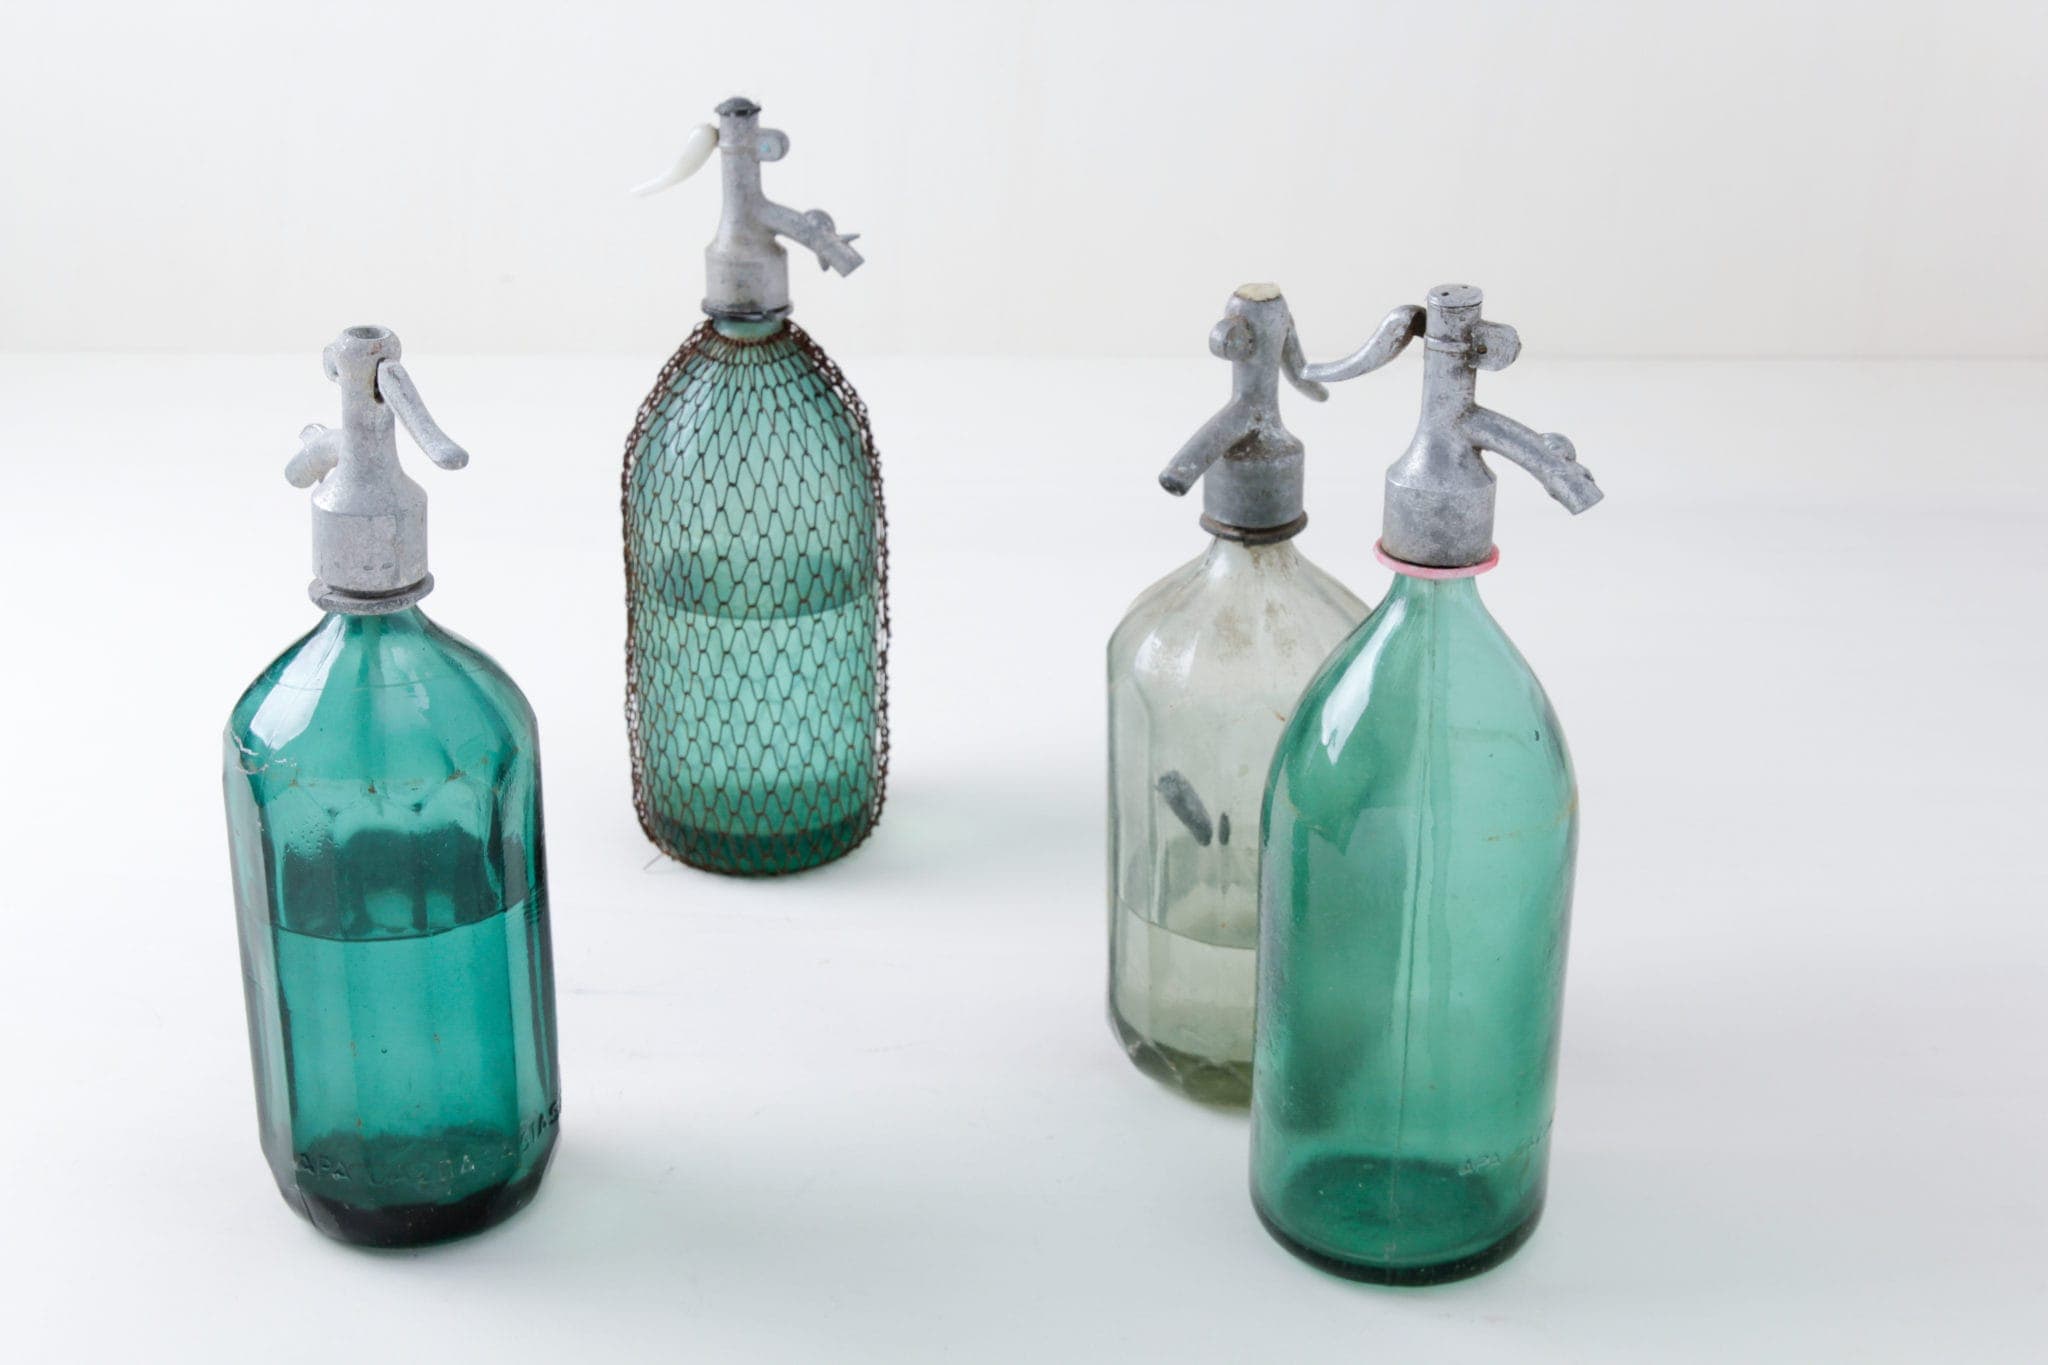 Vintage Sodaflaschen, Glasware, mieten, Dekoration